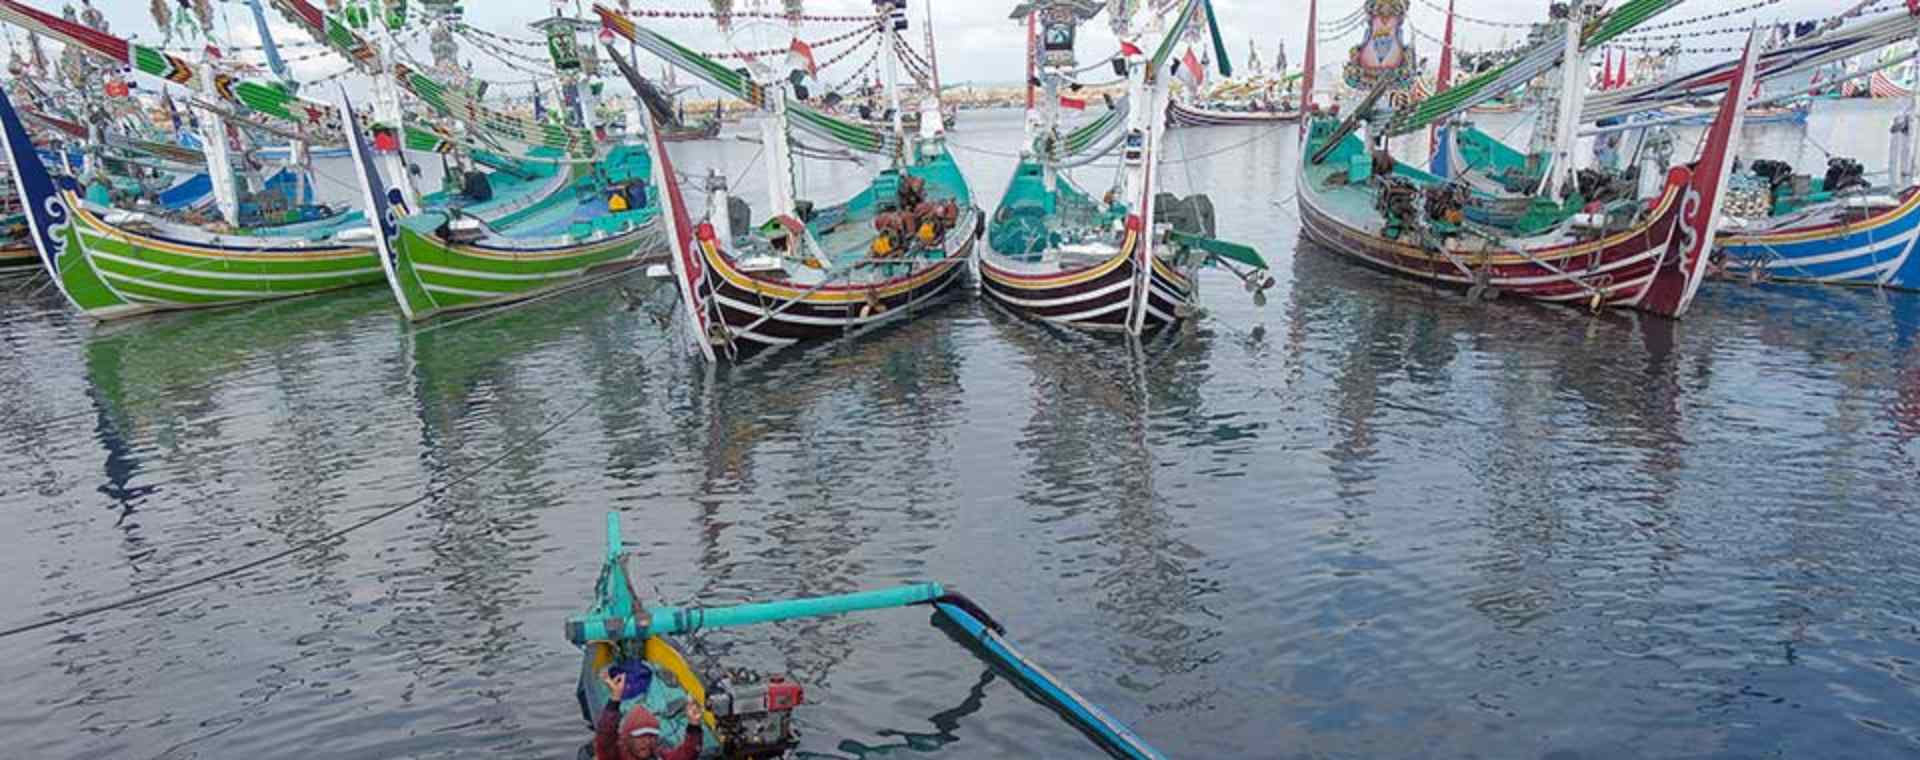 Sejumlah nelayan membongkar muat ikan hasil tangkapan di Pelabuhan Perikanan Nusantara Pengambengan, Jembrana, Bali, Kamis (21/7 - 2022). ANTARA FOTO / Nyoman Hendra Wibowo\\r\\n